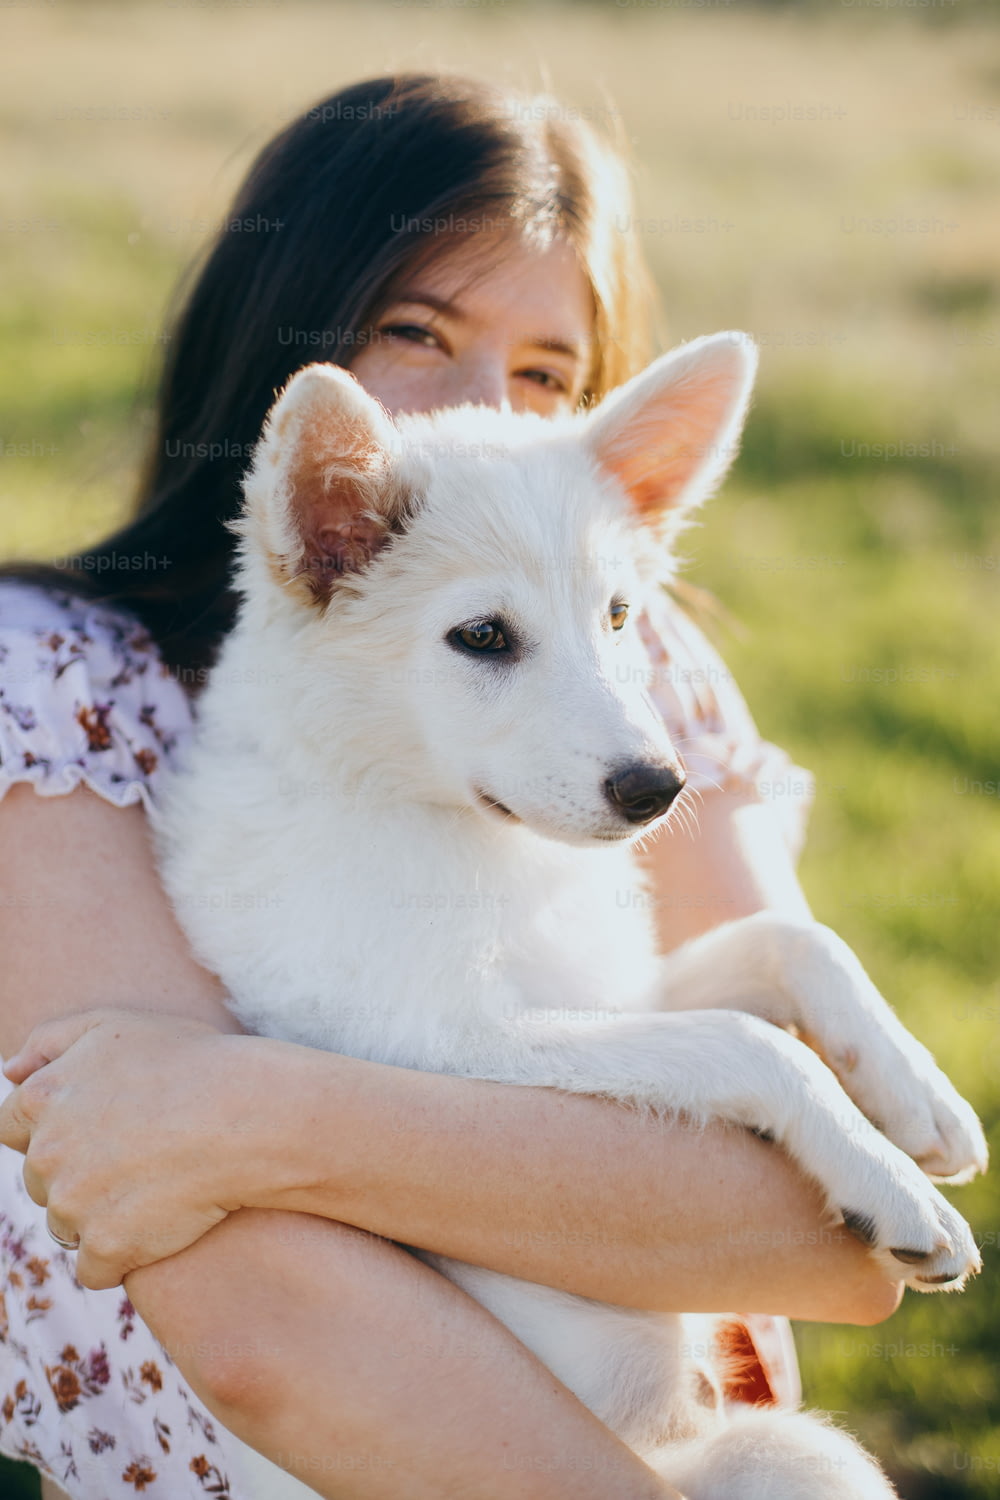 Mujer joven con estilo abrazando a un lindo cachorro blanco en la cálida luz del atardecer en el prado de verano. Chica feliz sosteniendo un adorable cachorro esponjoso. Hermoso momento atmosférico. Concepto de adopción.